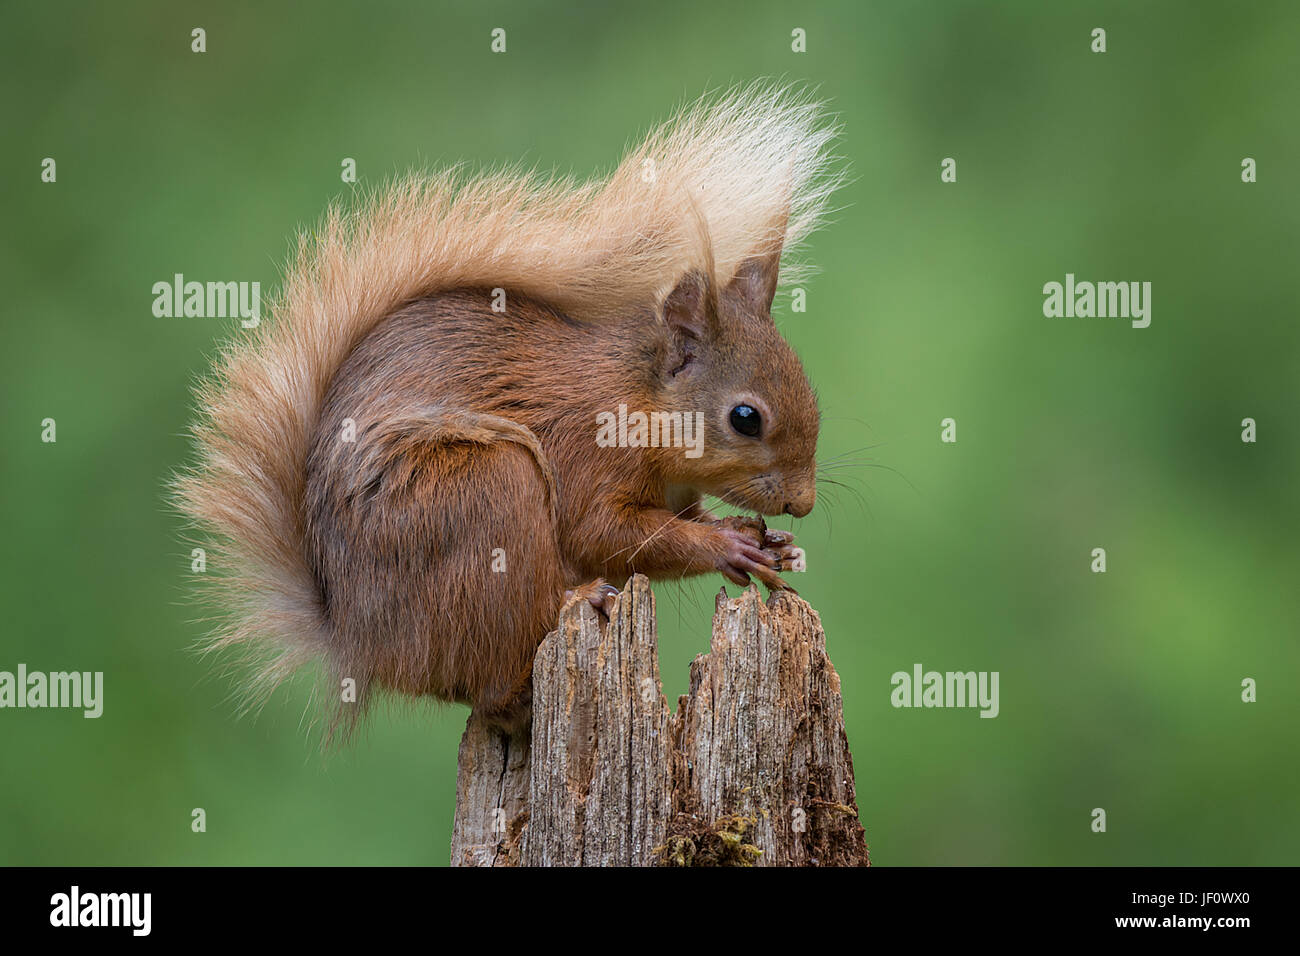 In der Nähe auf und typische Pose eines roten Eichhörnchens sitting on Top of Bohnenstroh Essen eine Haselnuss und seine buschige Rute anzeigen Stockfoto